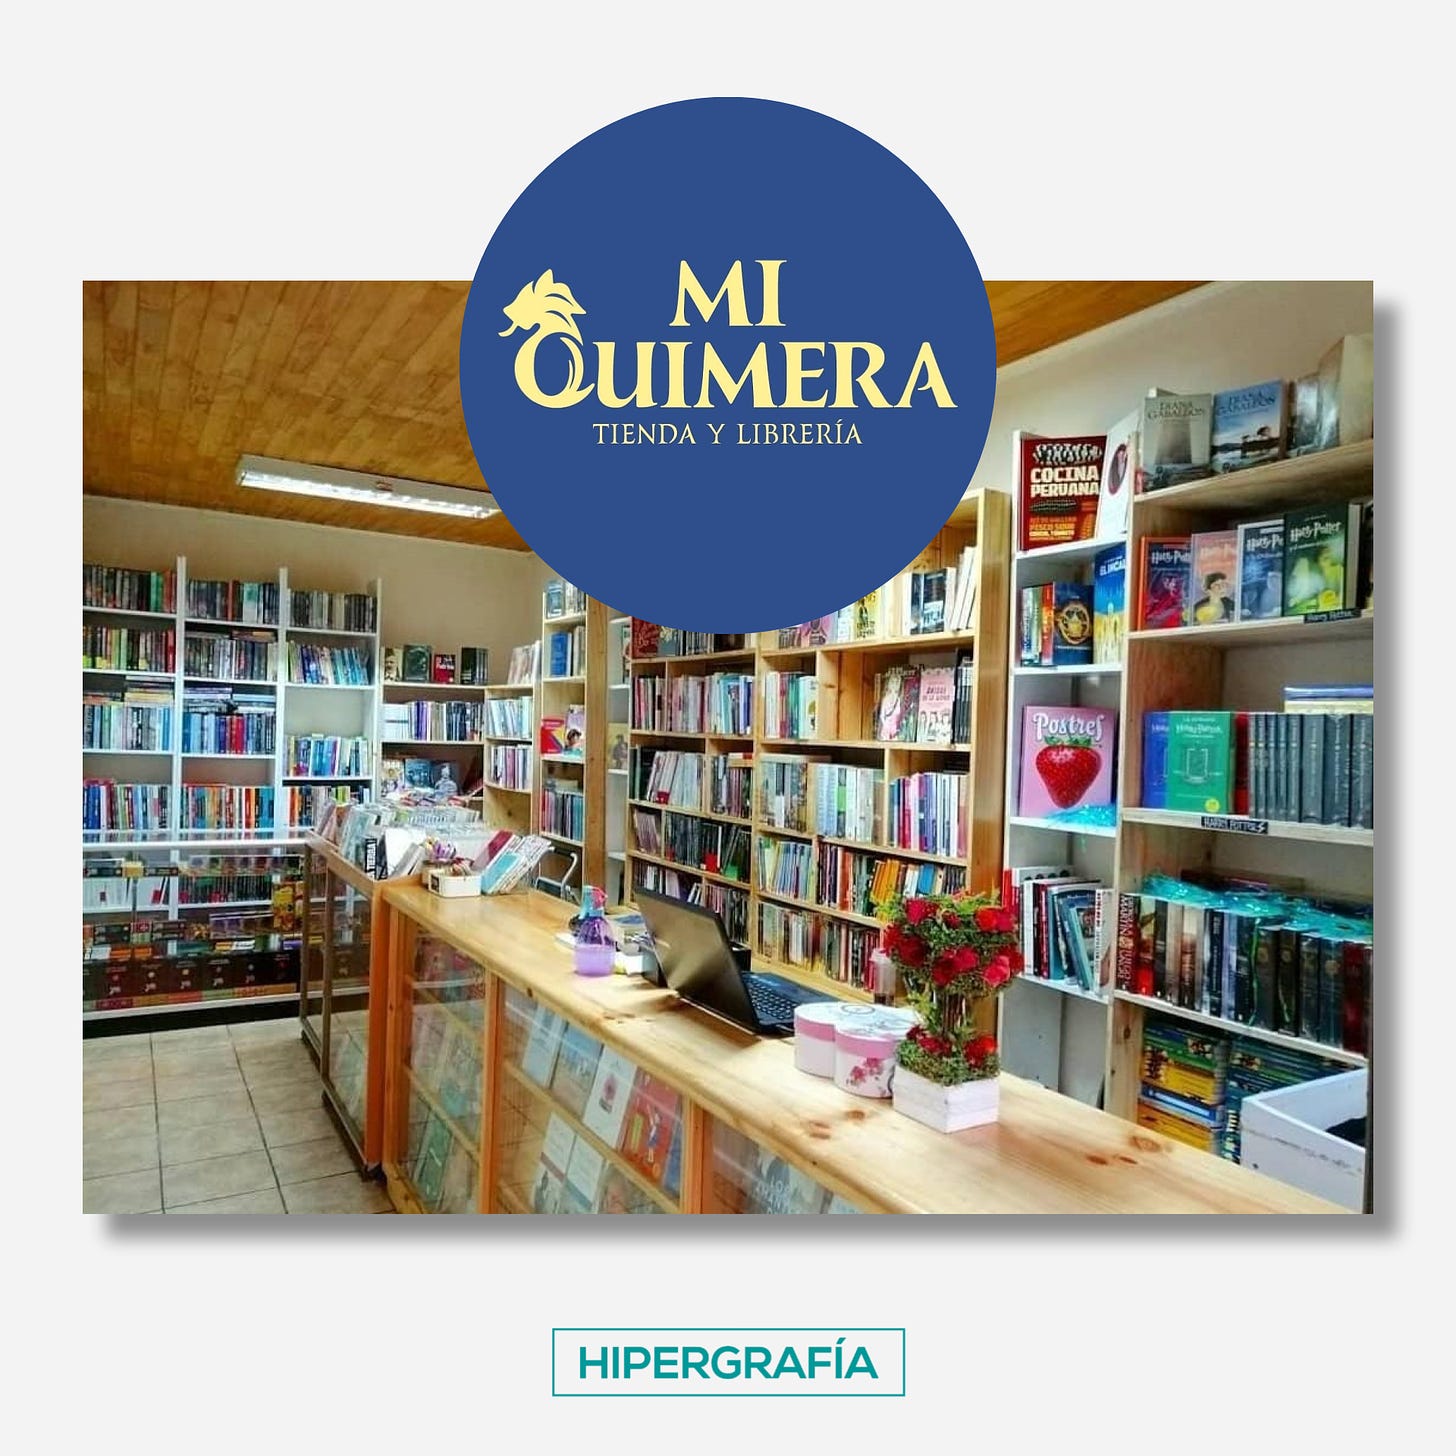 Logo de librería Mi Quimera y fotografía de su tienda en Temuco.